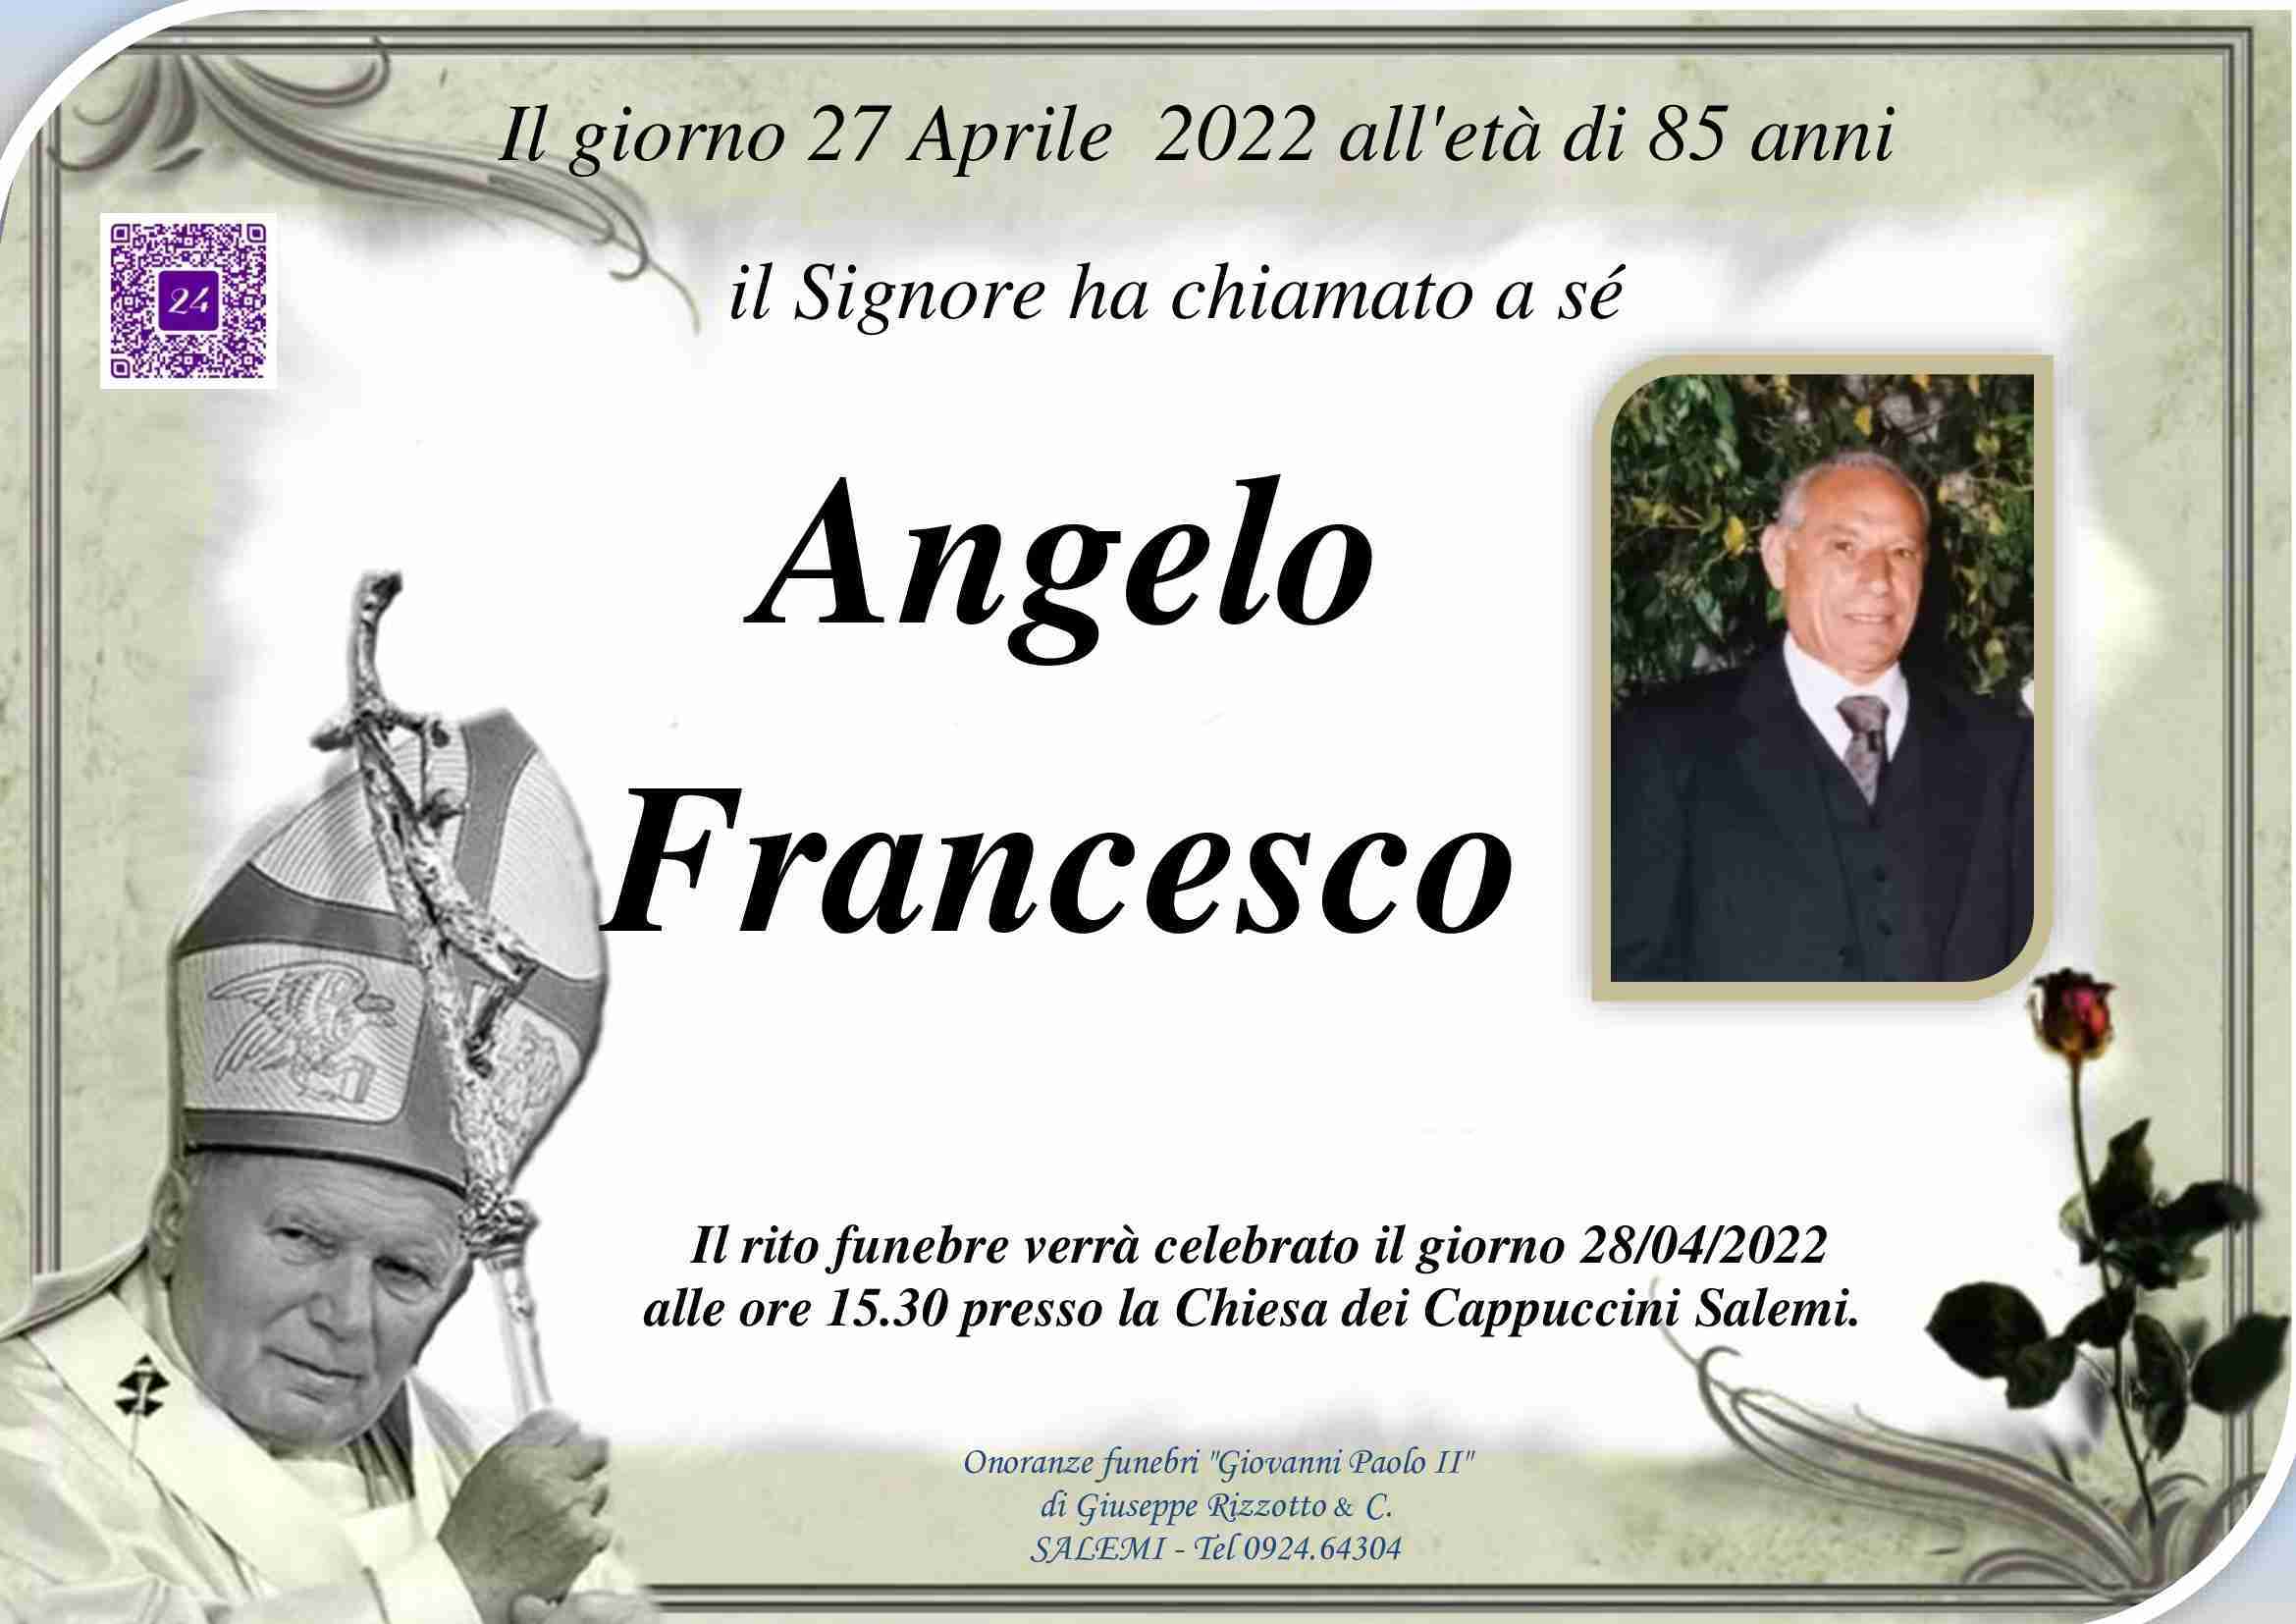 Francesco Angelo